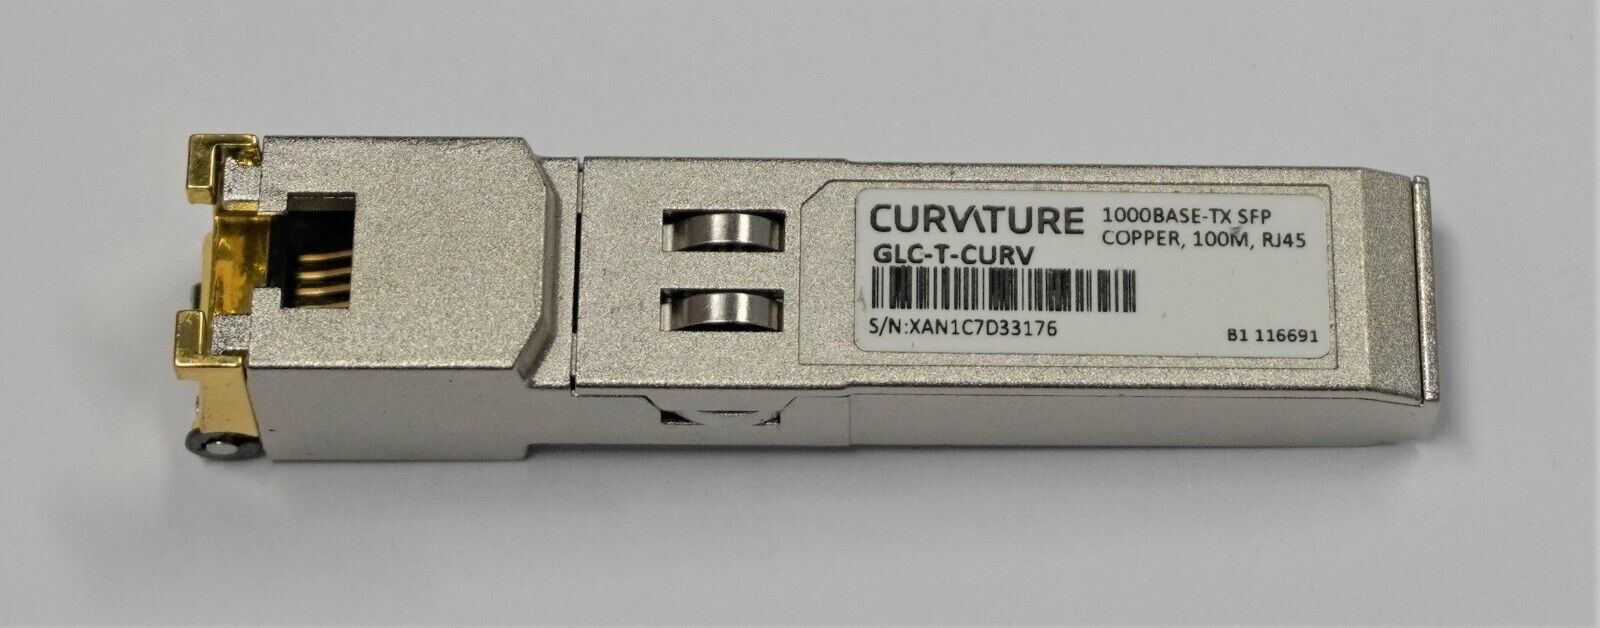 Curvature | GLC-T-CURV | Copper 100M RJ45 Transceiver Module